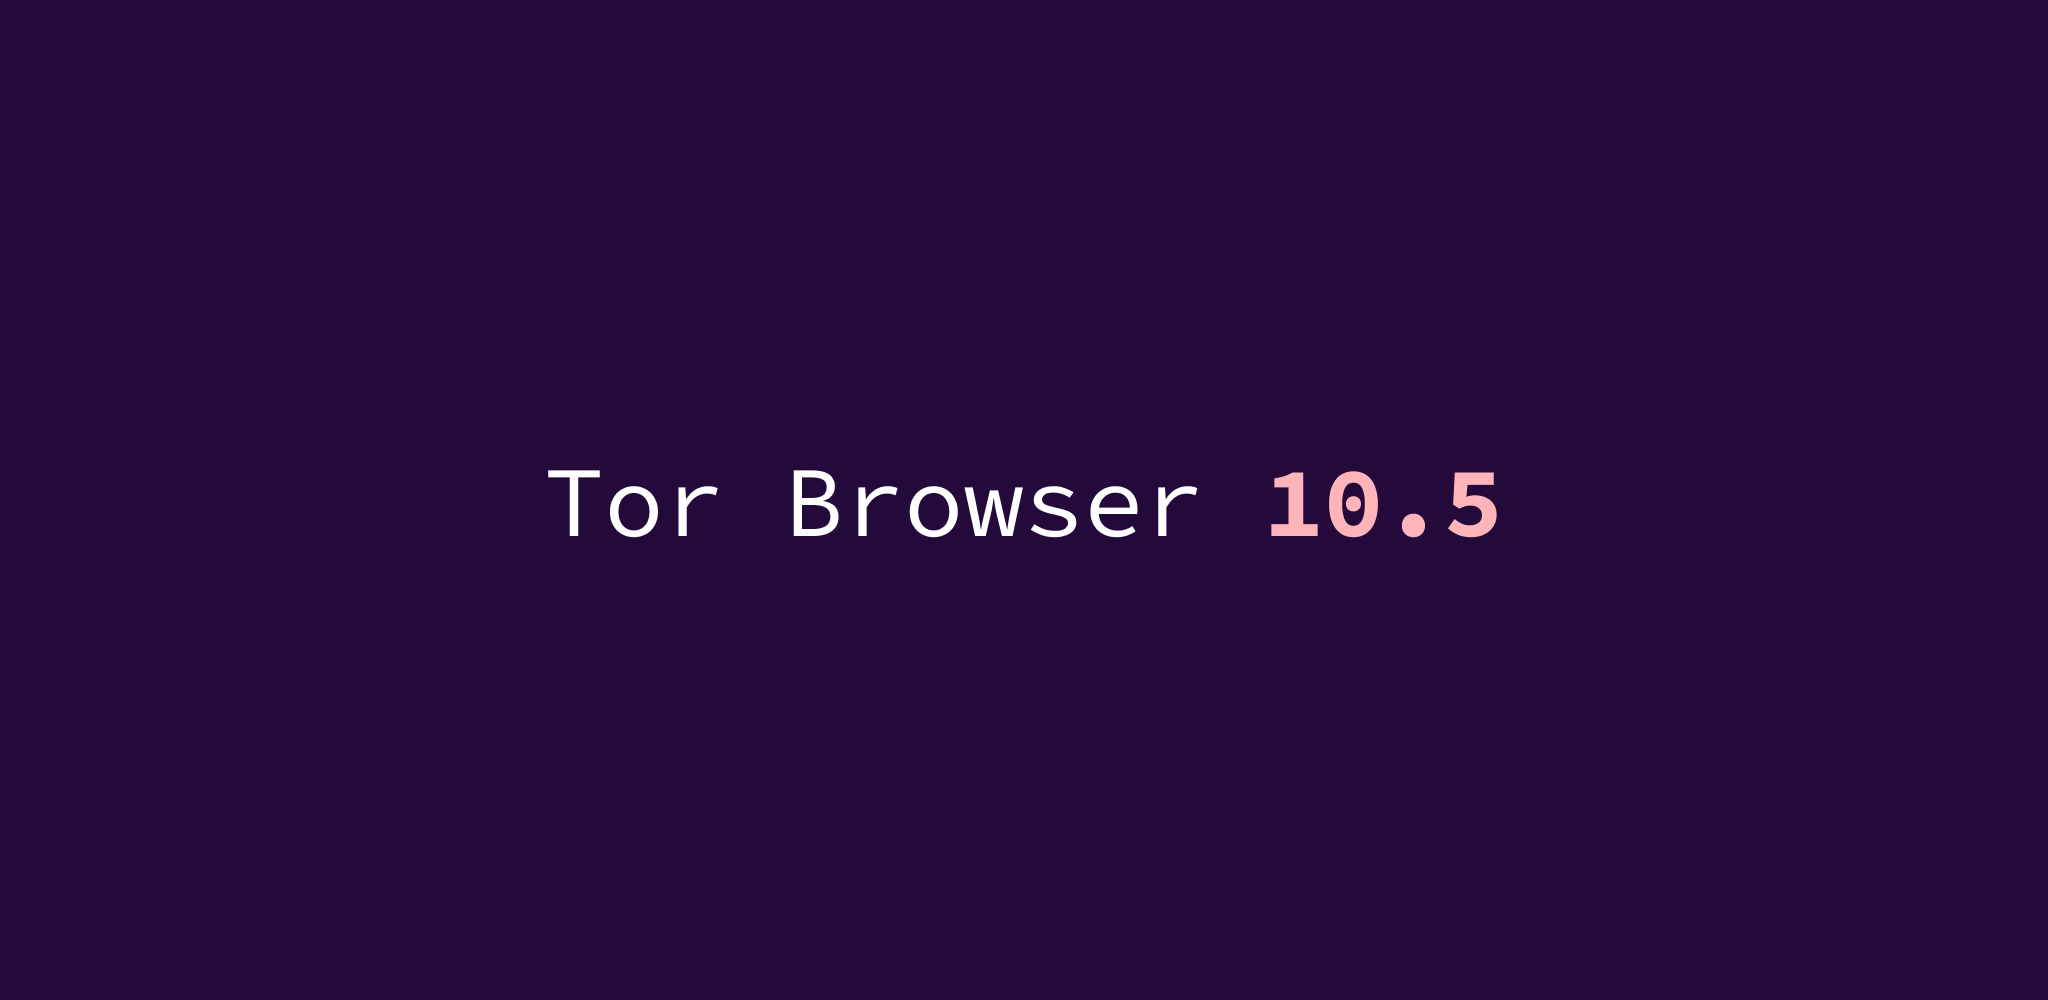 Tor browser на windows phone 10 hydraruzxpnew4af скачать тор браузер уже готовый на русском языке